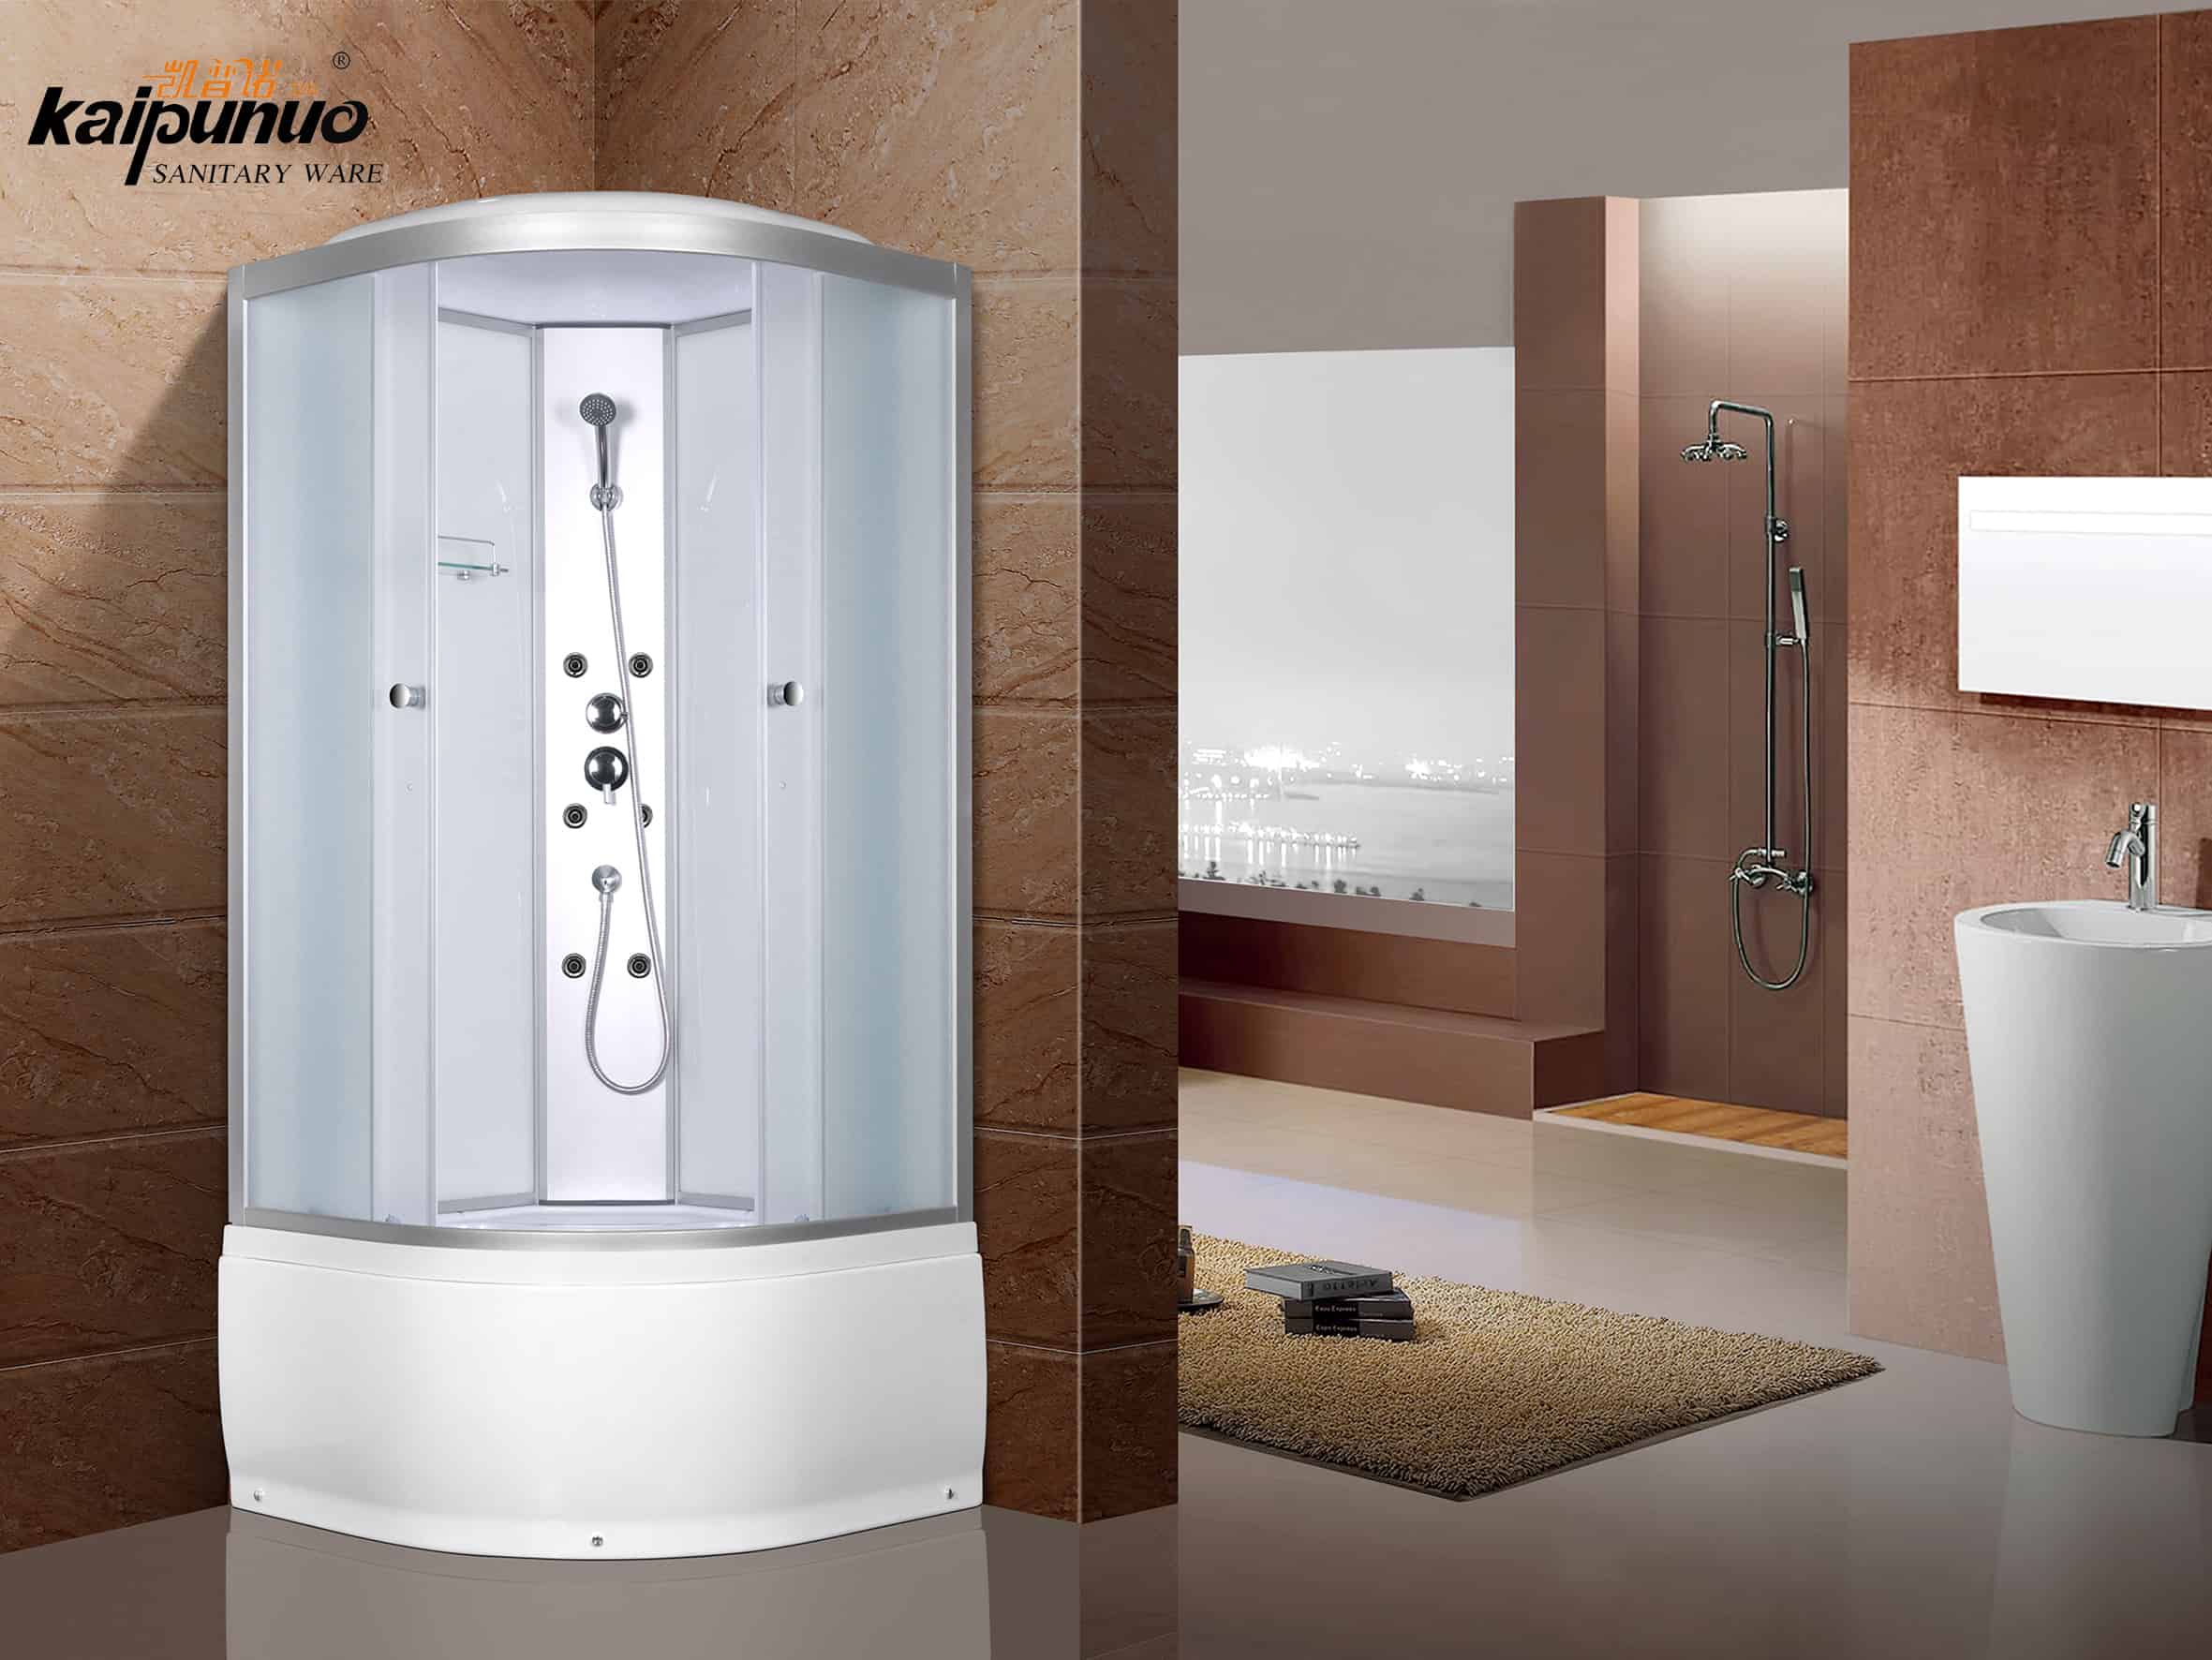 Salle de douche intérieure à vapeur avec jet de massage